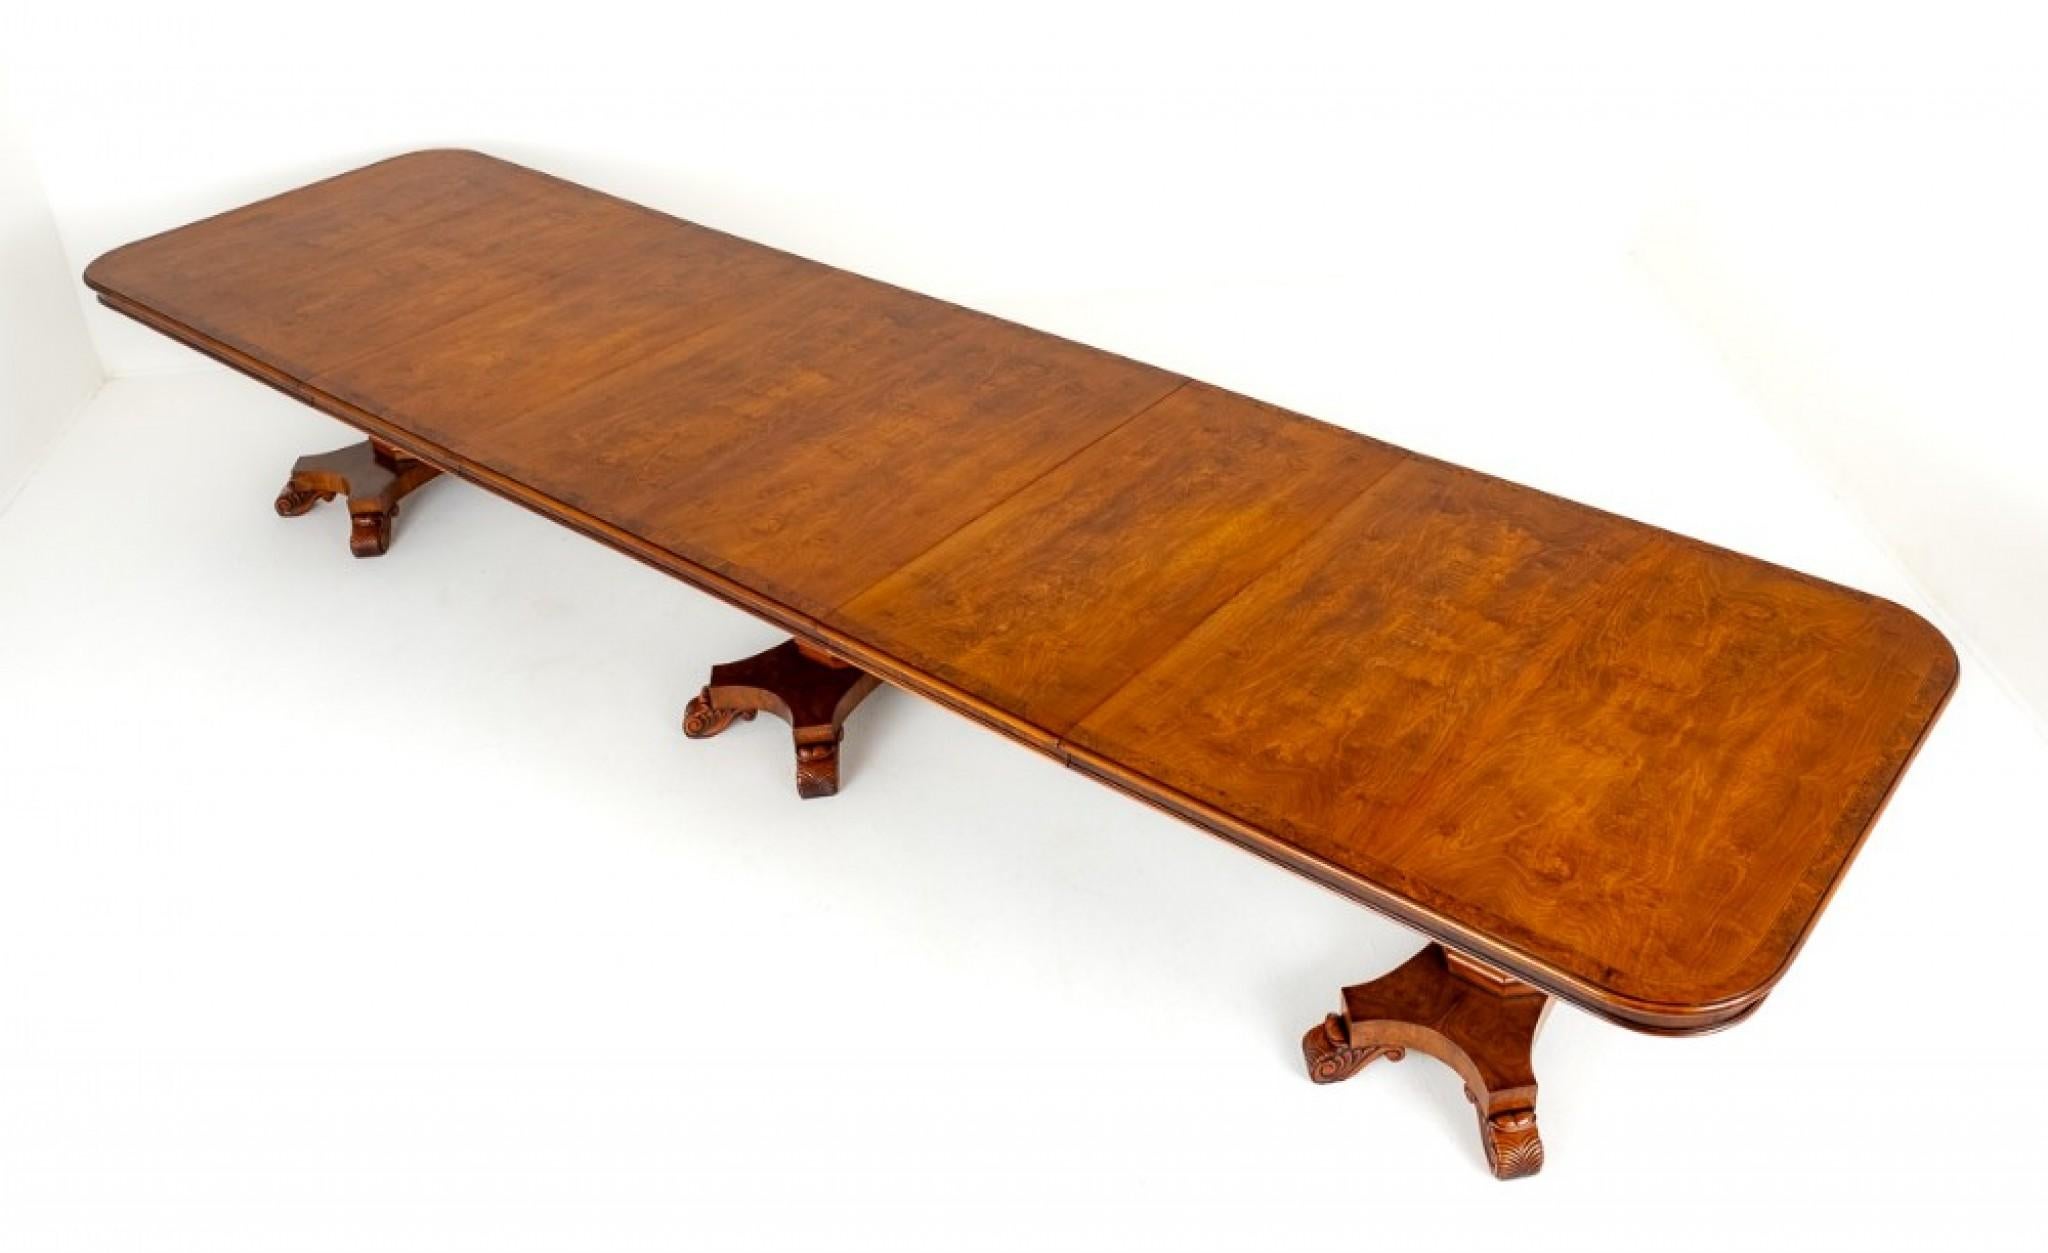 Hervorragender Esstisch aus Nussbaumholz in der Manier von George Bullock.
Dieser wunderbare Tisch steht auf 3 Sockeln, die sich durch Plattformsockel, geschnitzte Füße und achteckige Säulen auszeichnen.
CIRCA 1920
Die Tischplatte hat eine runde,